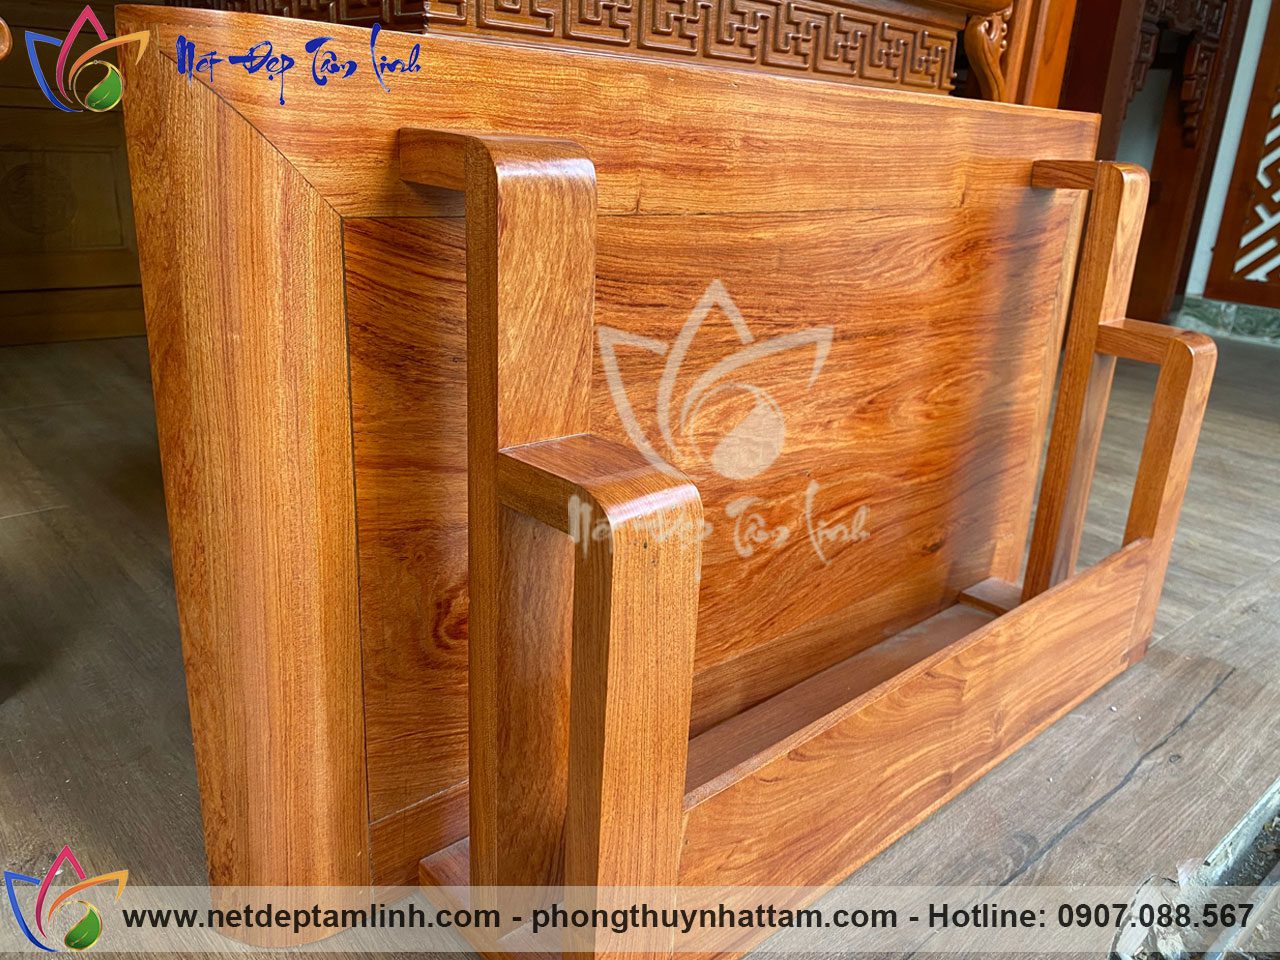 Mẫu bàn thờ treo tường gỗ Hương